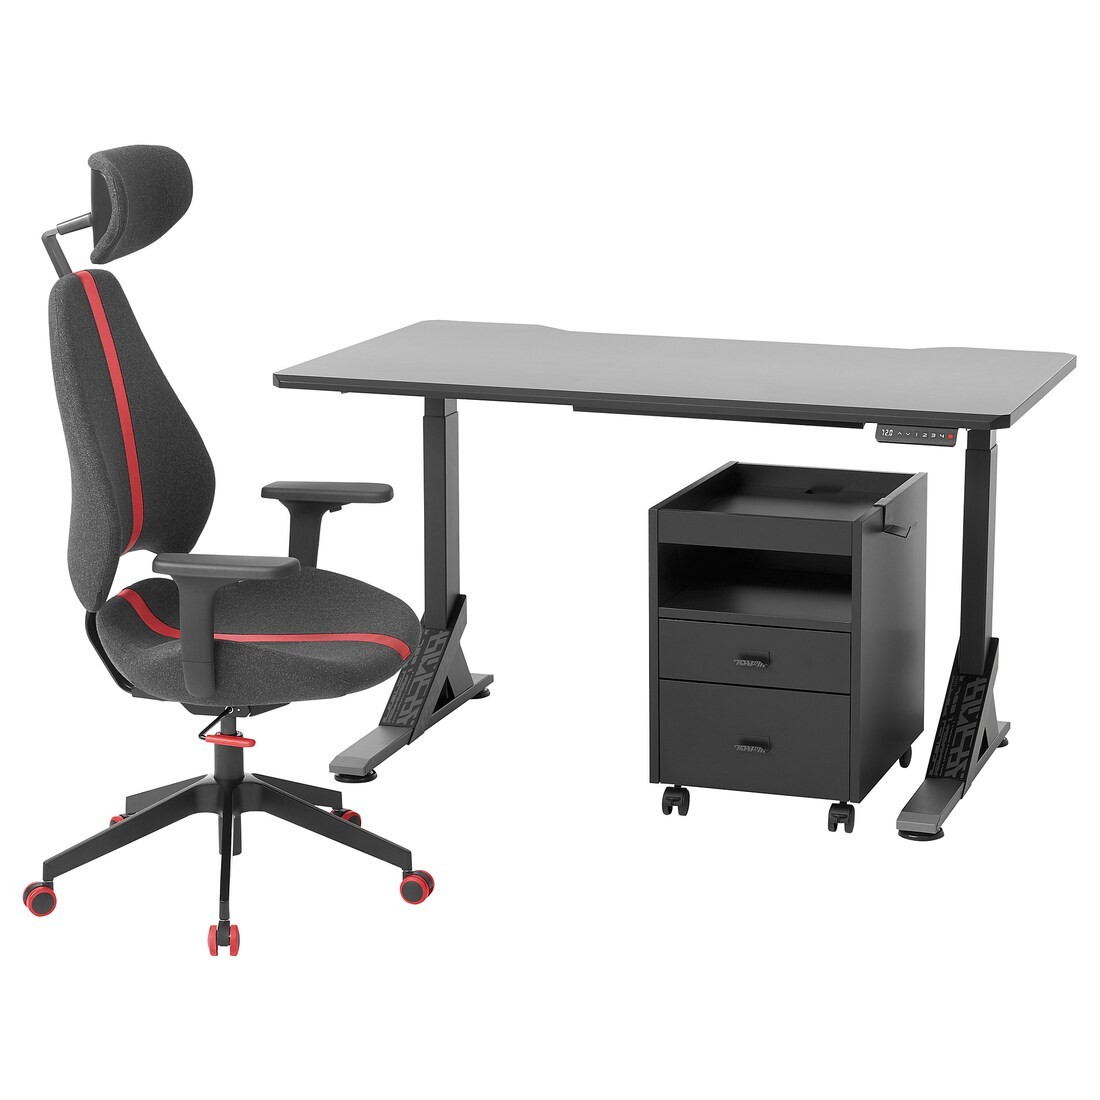 UPPSPEL УППСПЕЛЬ / GRUPPSPEL Письменный стол, стул и комод, черный / серый, 140x80 cм